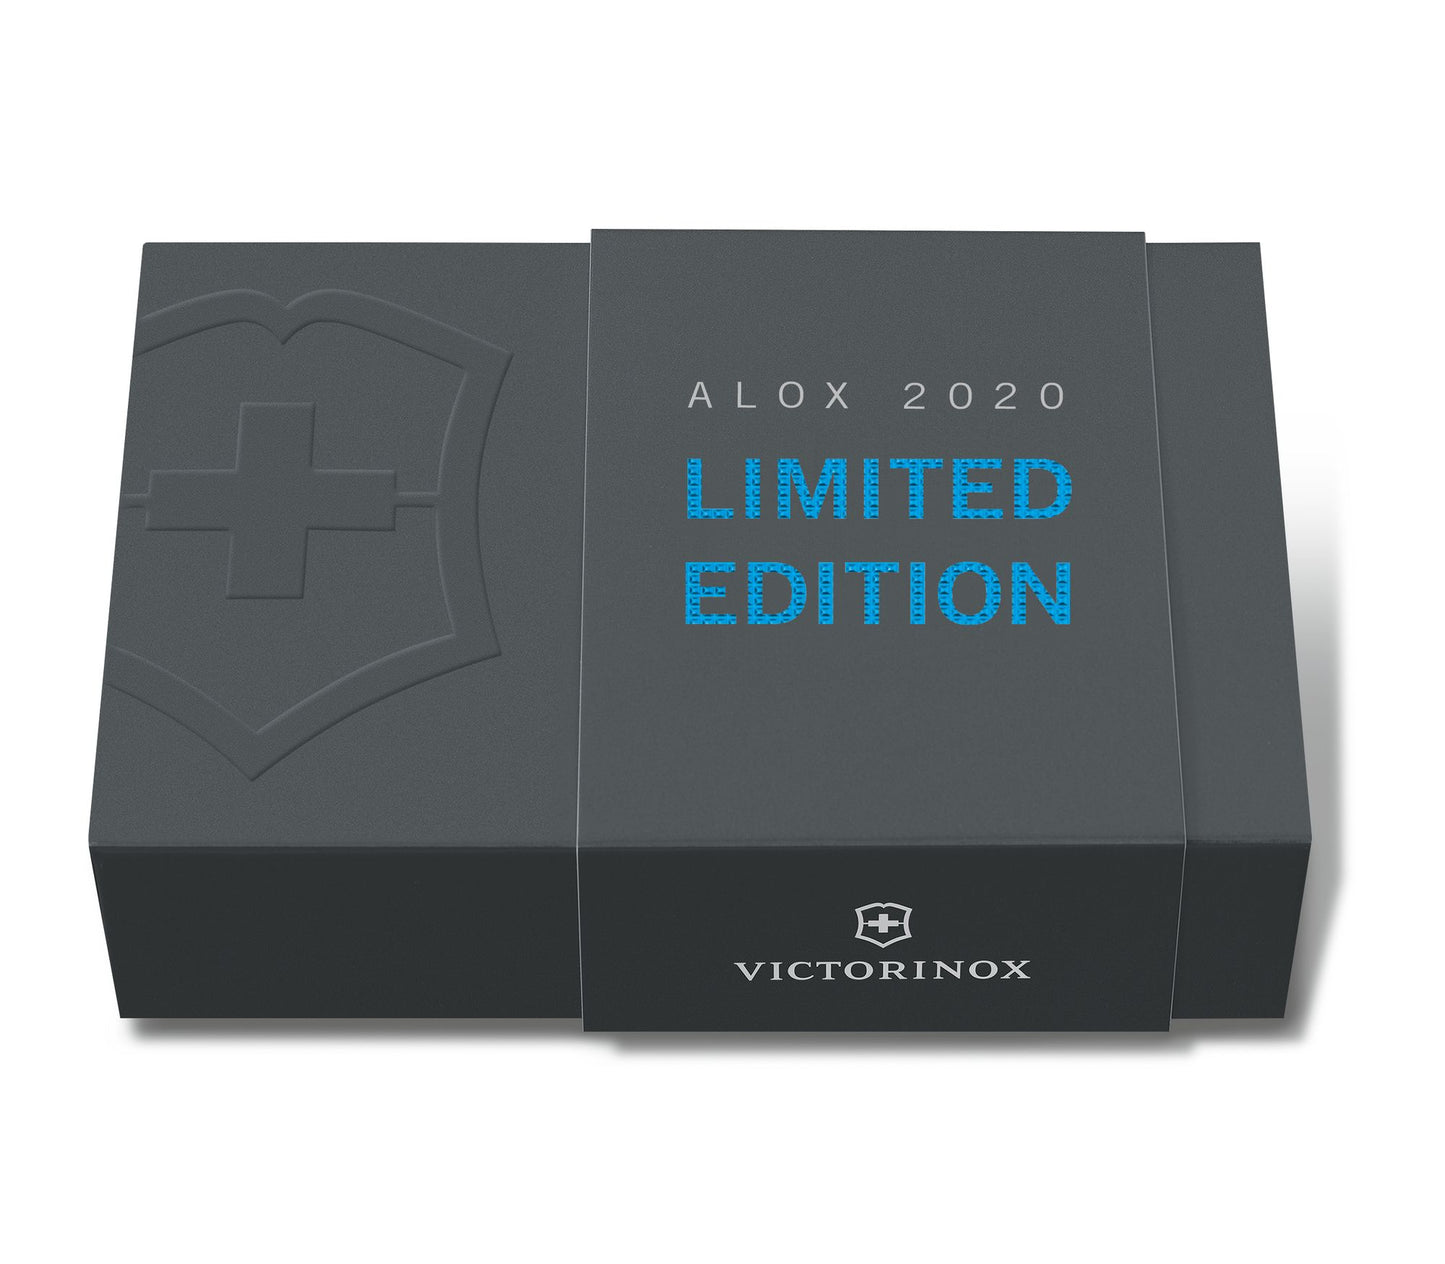 Victorinox coltello multiuso Pioneer Alox edizione limitata 2020